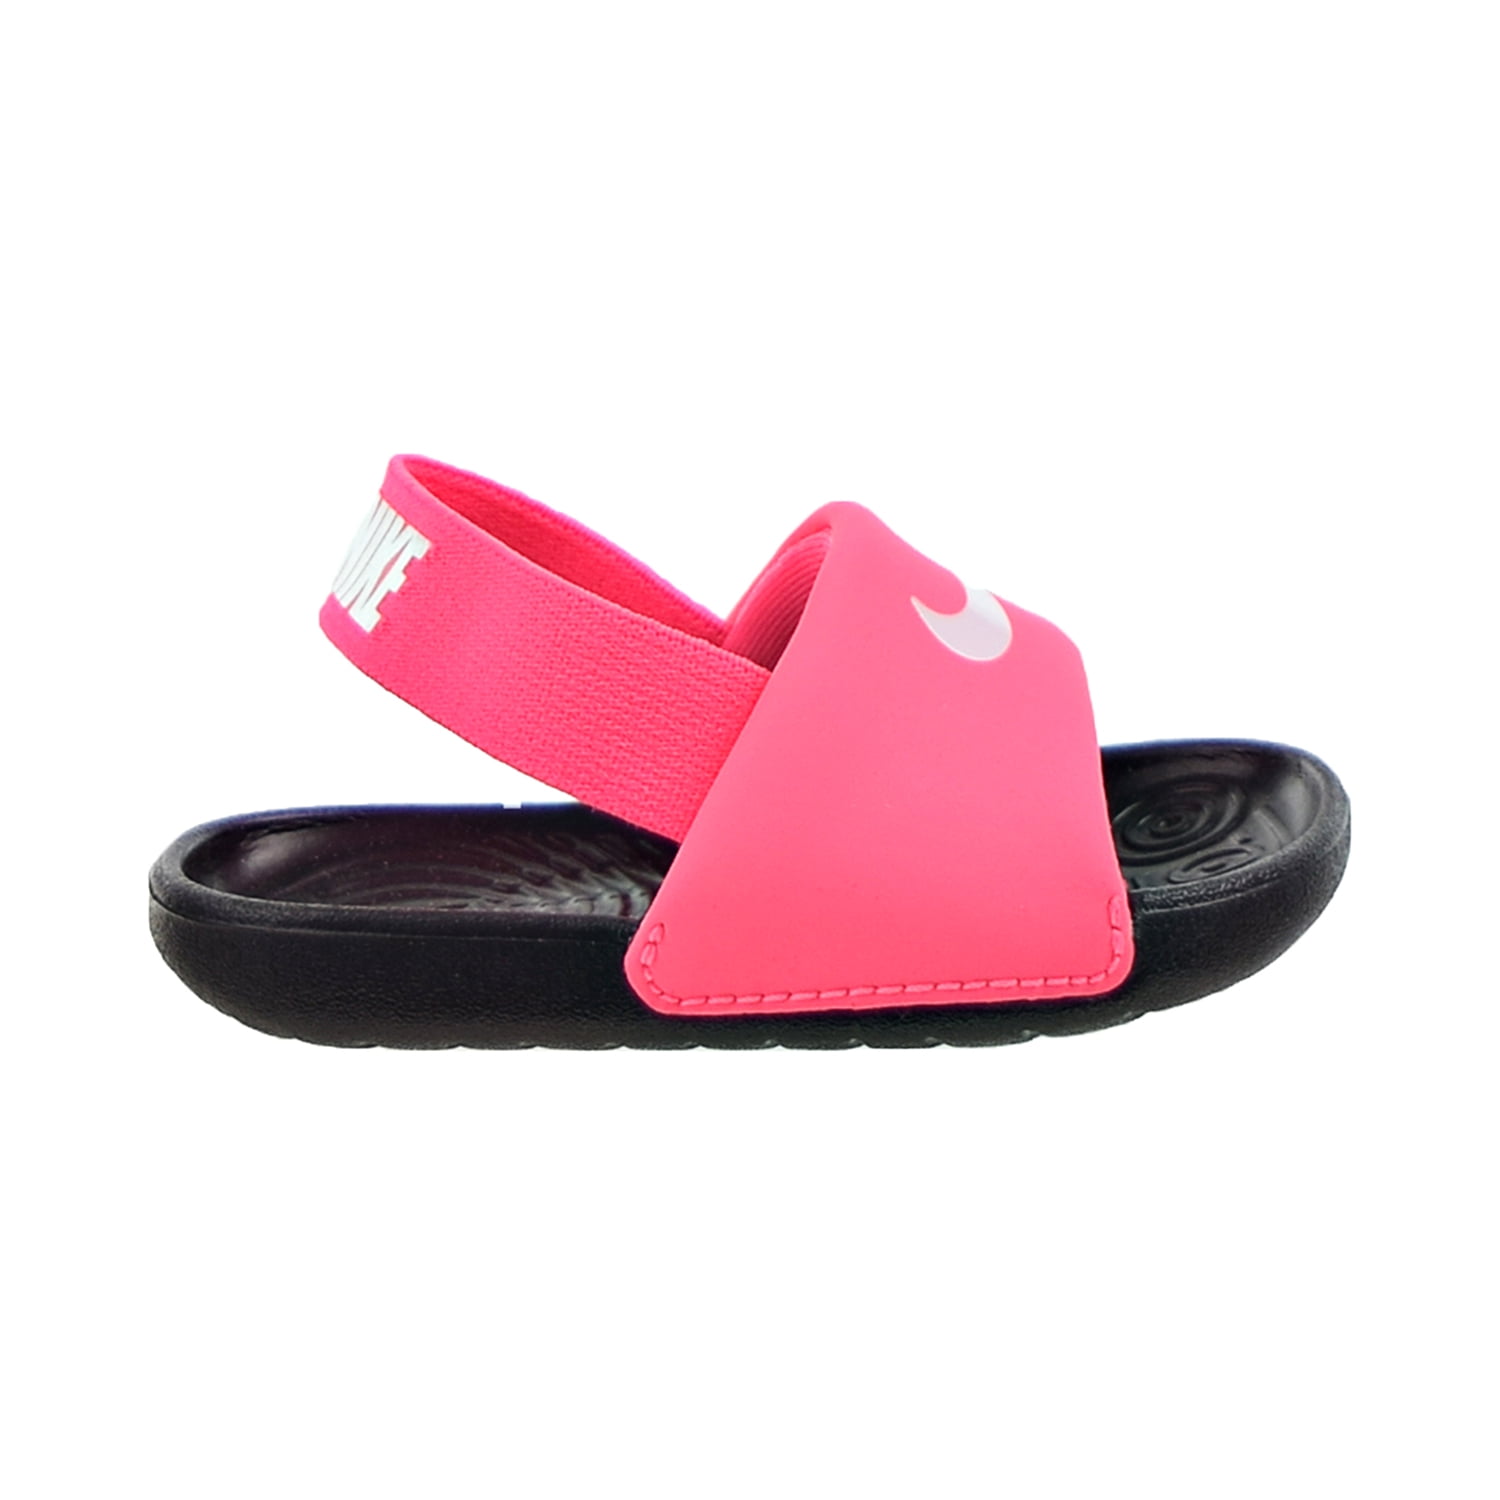 Kawa (TD) Toddler's Sandals Pink-White - Walmart.com